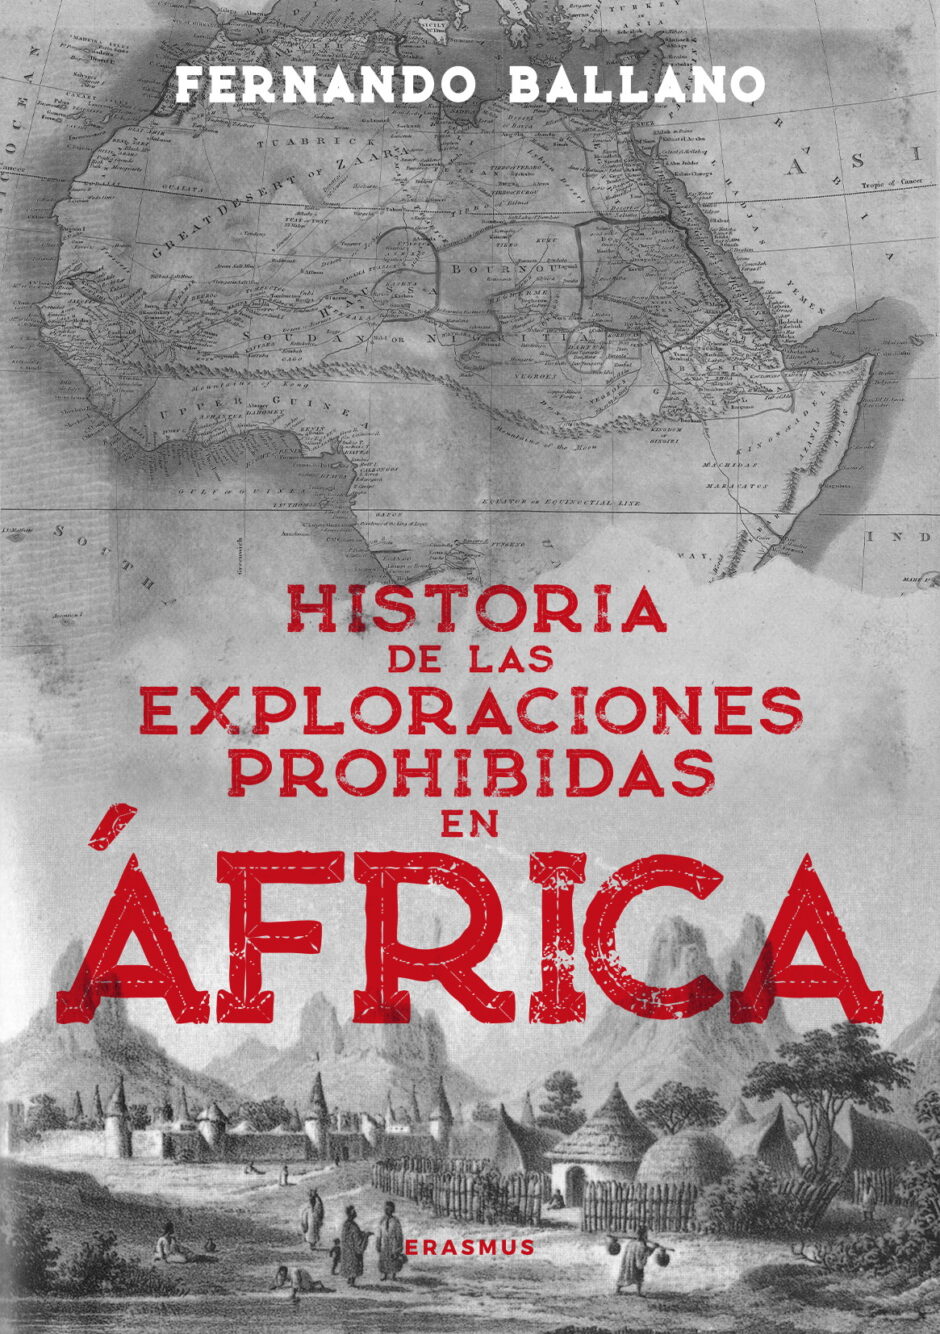 Historias de los exploradores que arriesgaron sus vidas para recorrer zonas de África vetadas a los occidentales